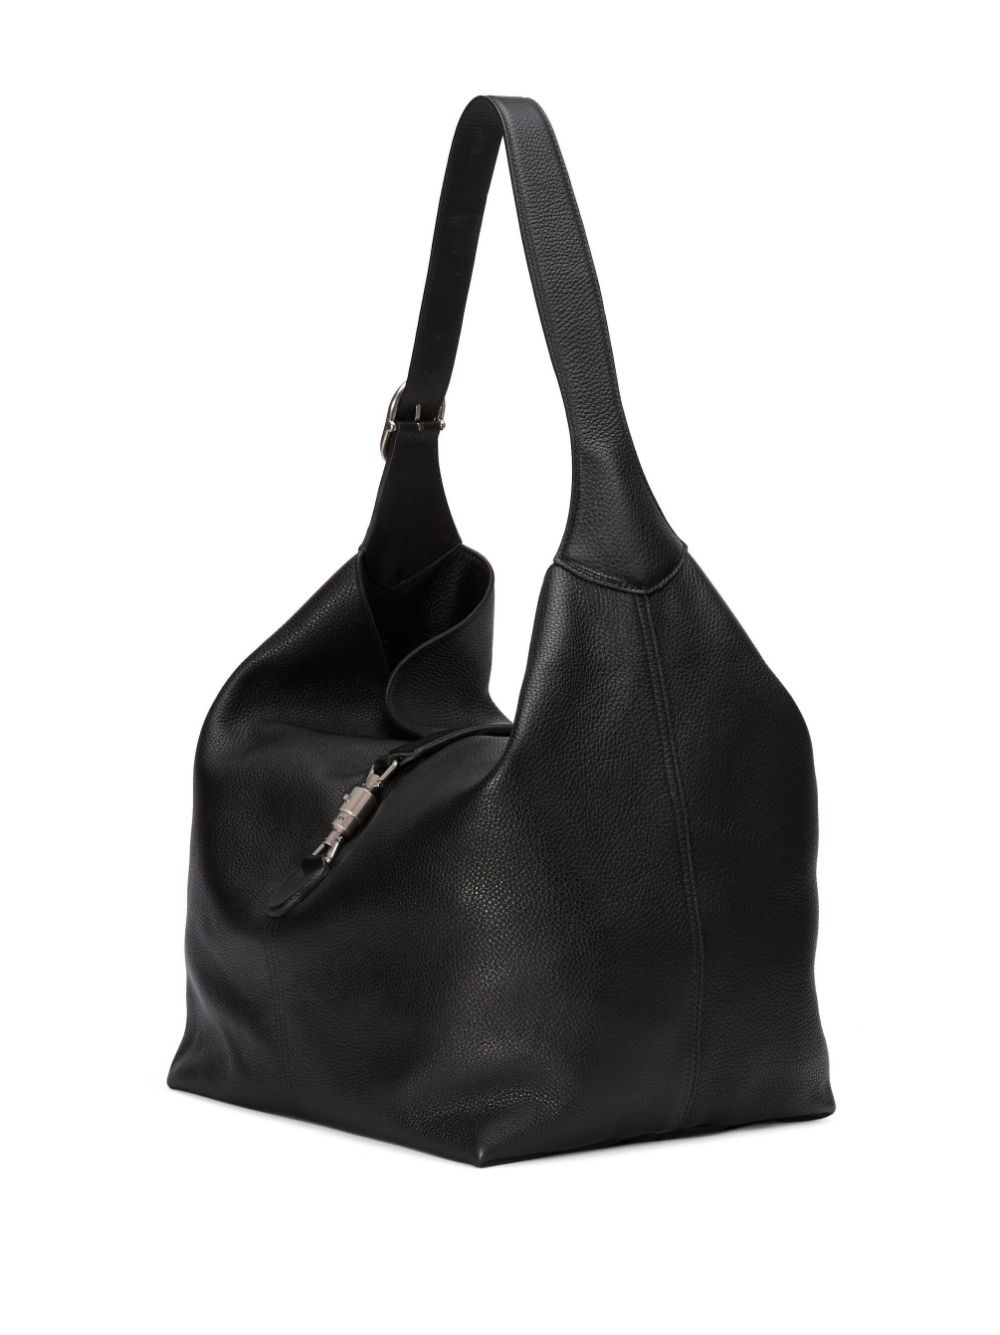 Jackie 1961 leather shoulder bag - 5